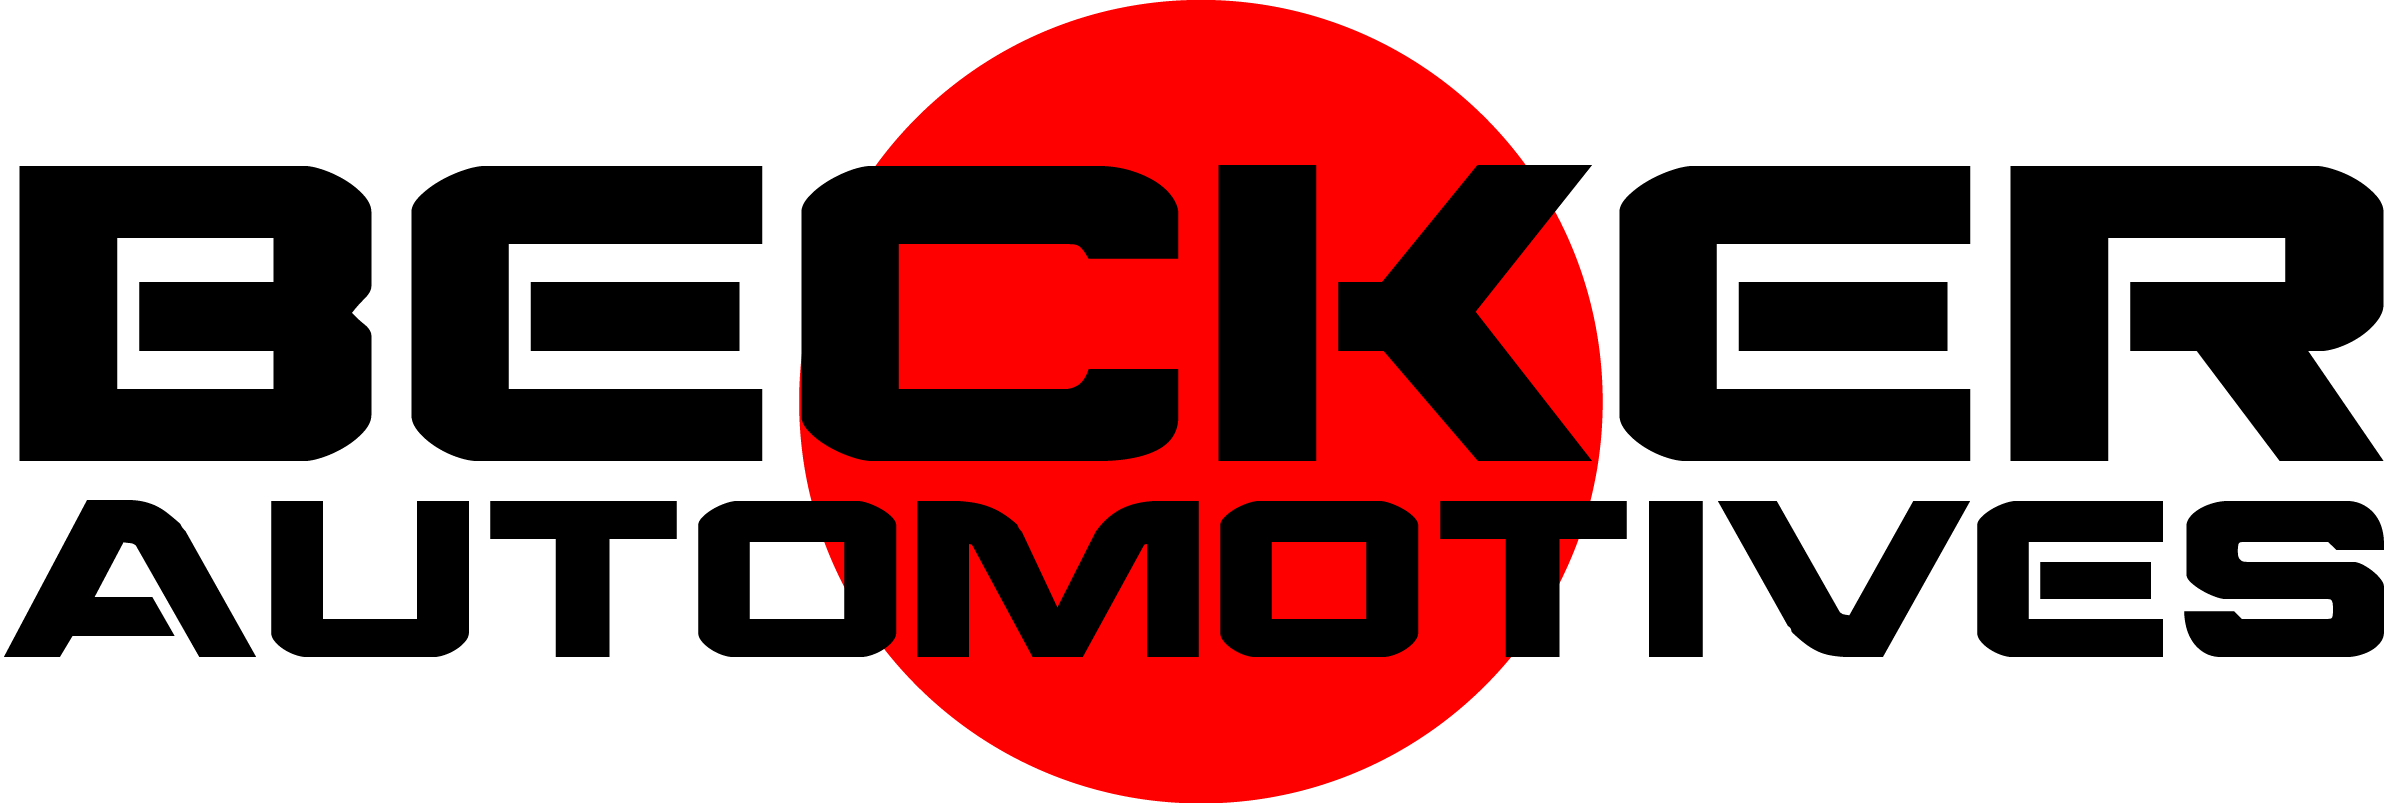 Becker Logo - Becker Automotives - Online Bicol Business Directory